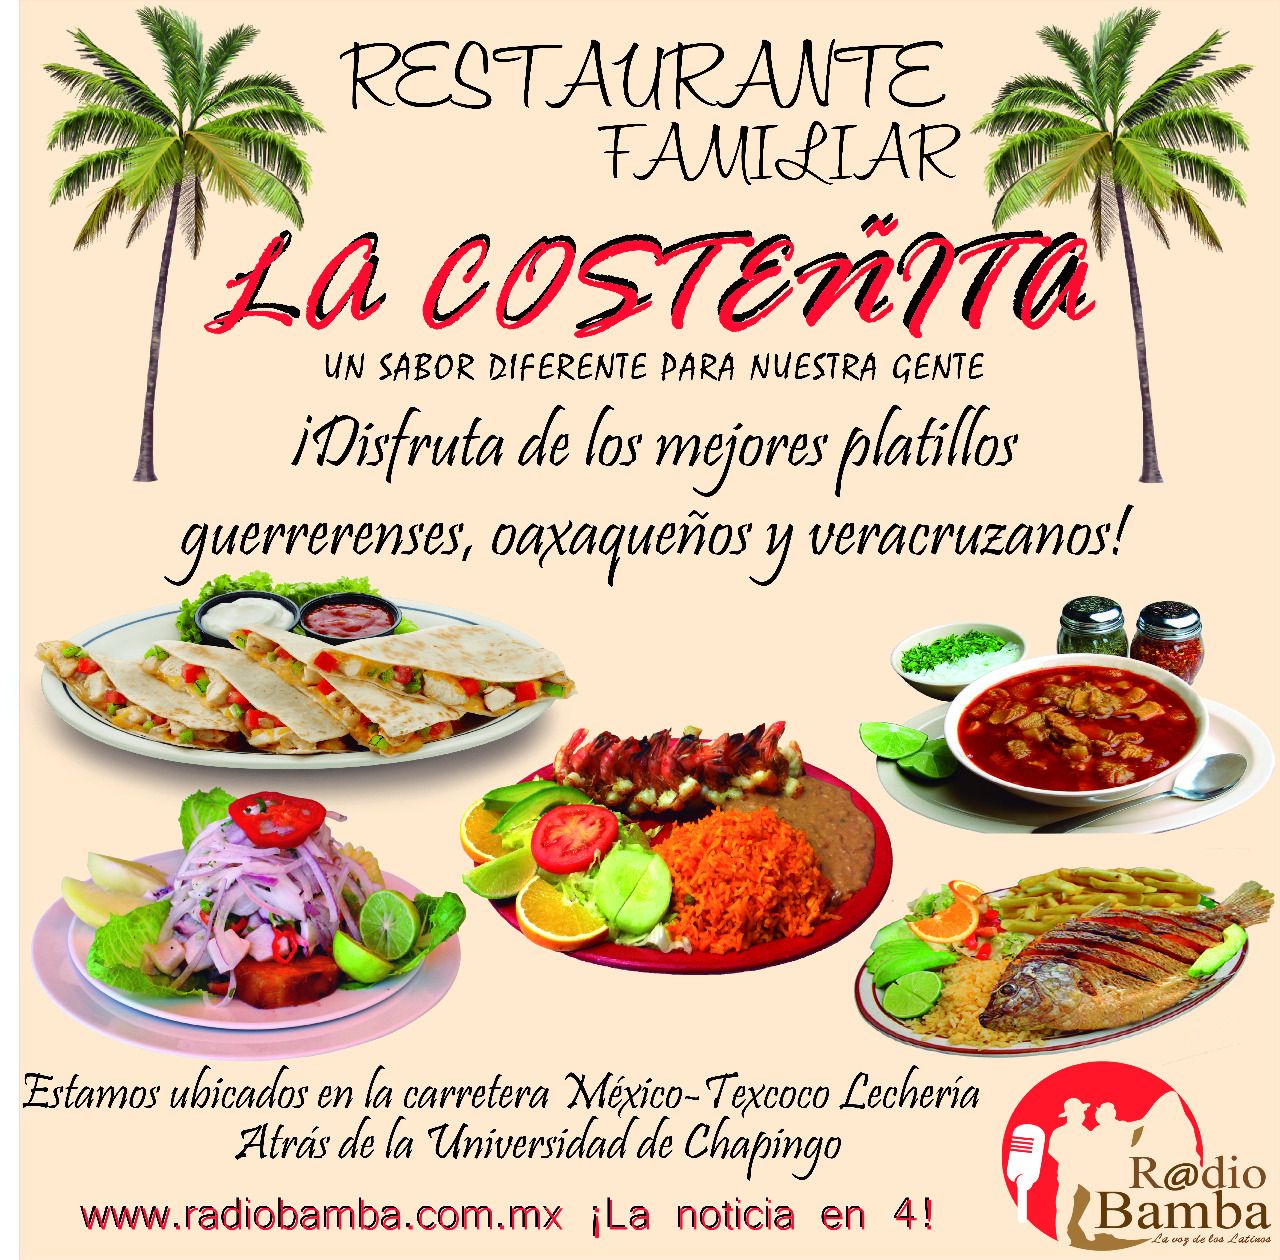 Restaurante familiar 🌴" *LA COSTEÑITA*"🌴.
Invita al festejo del "Día del Amor y la Amistad"